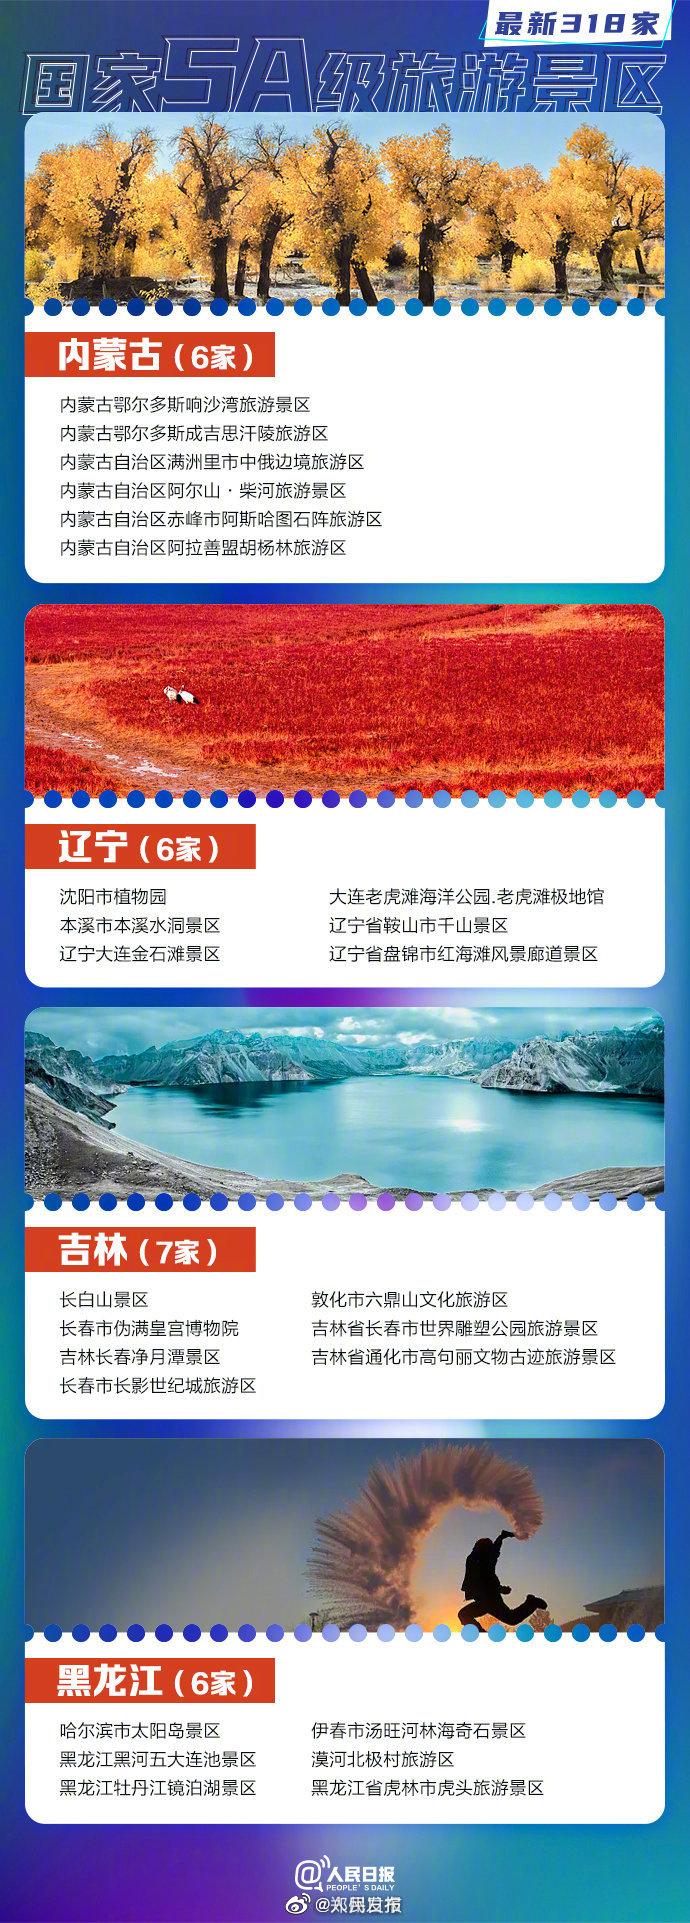 2023中国5a景区名单最新 中国5a旅游景区有多少个